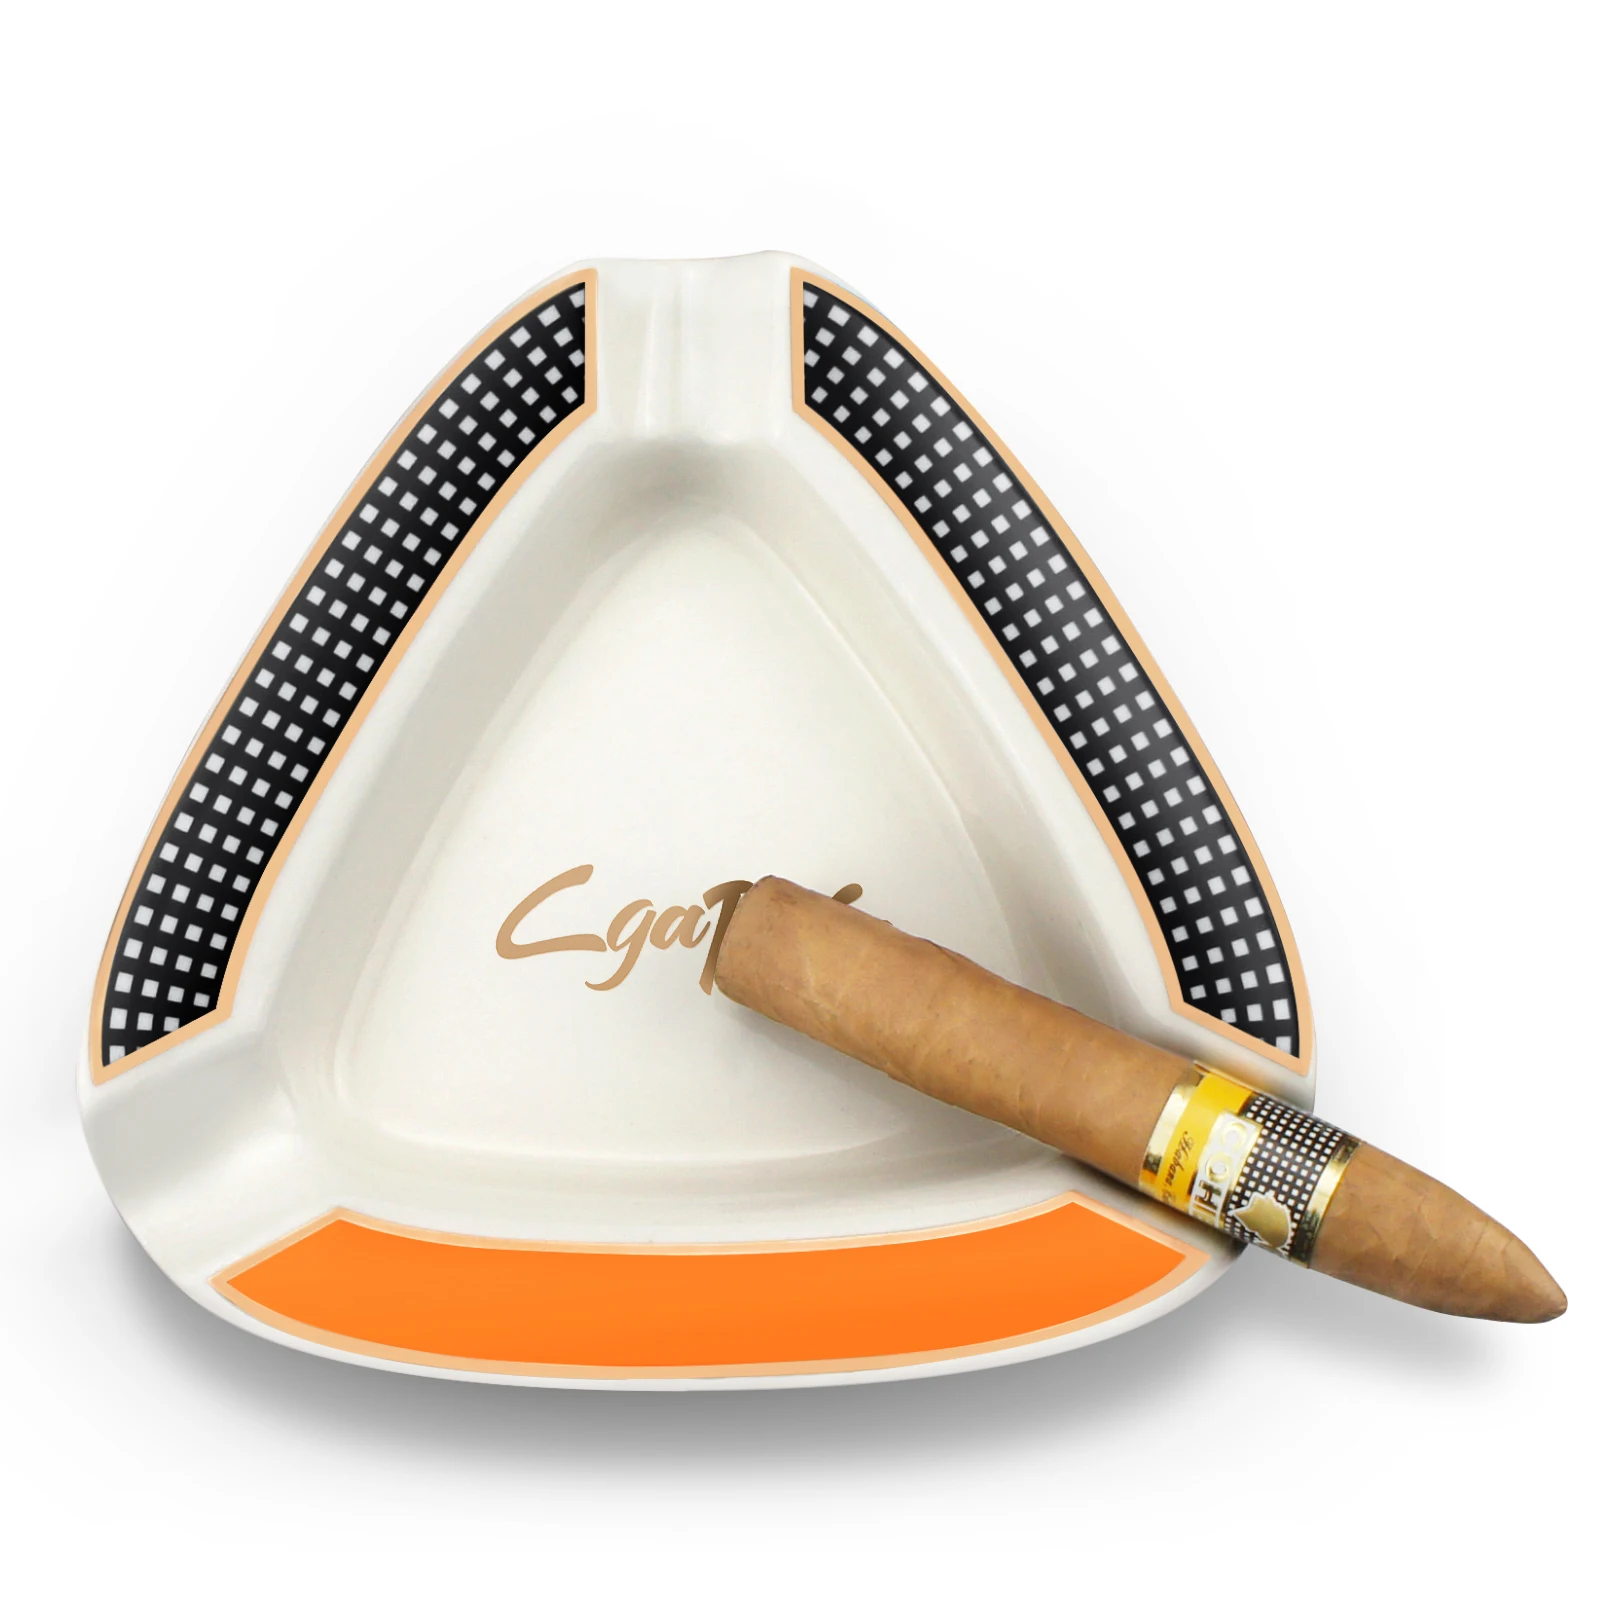 

Пепельница для сигар треугольная портативная керамическая 3 сигар гаджеты домашние инструменты для сигар аксессуары для курения Пепельница держатель для сигарет